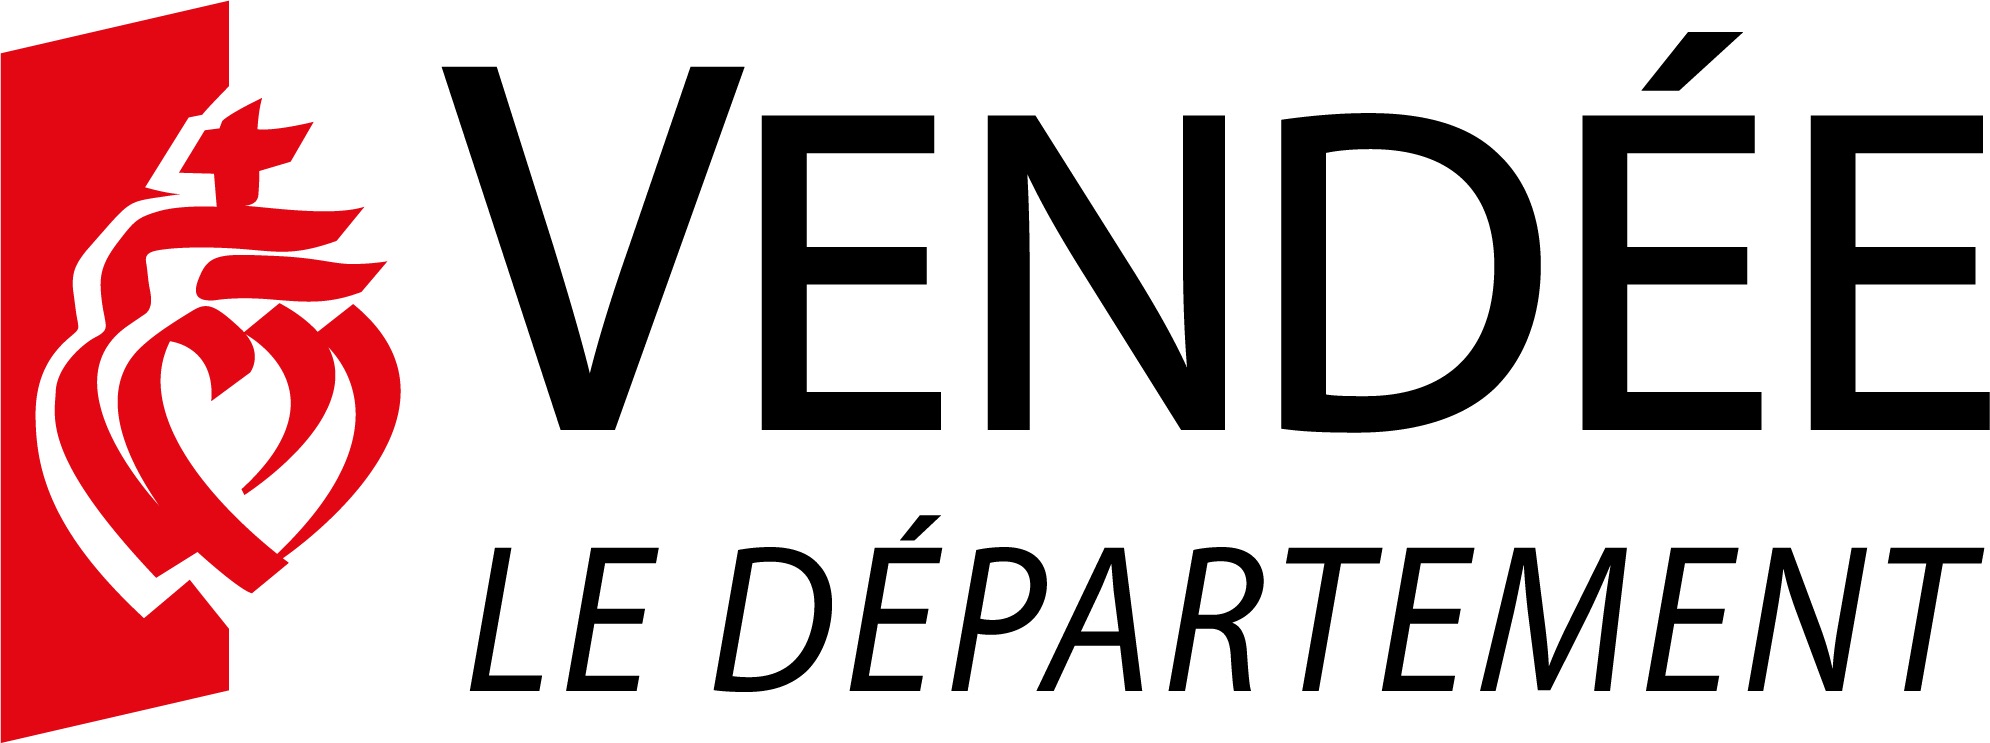 Logo Département Vendée